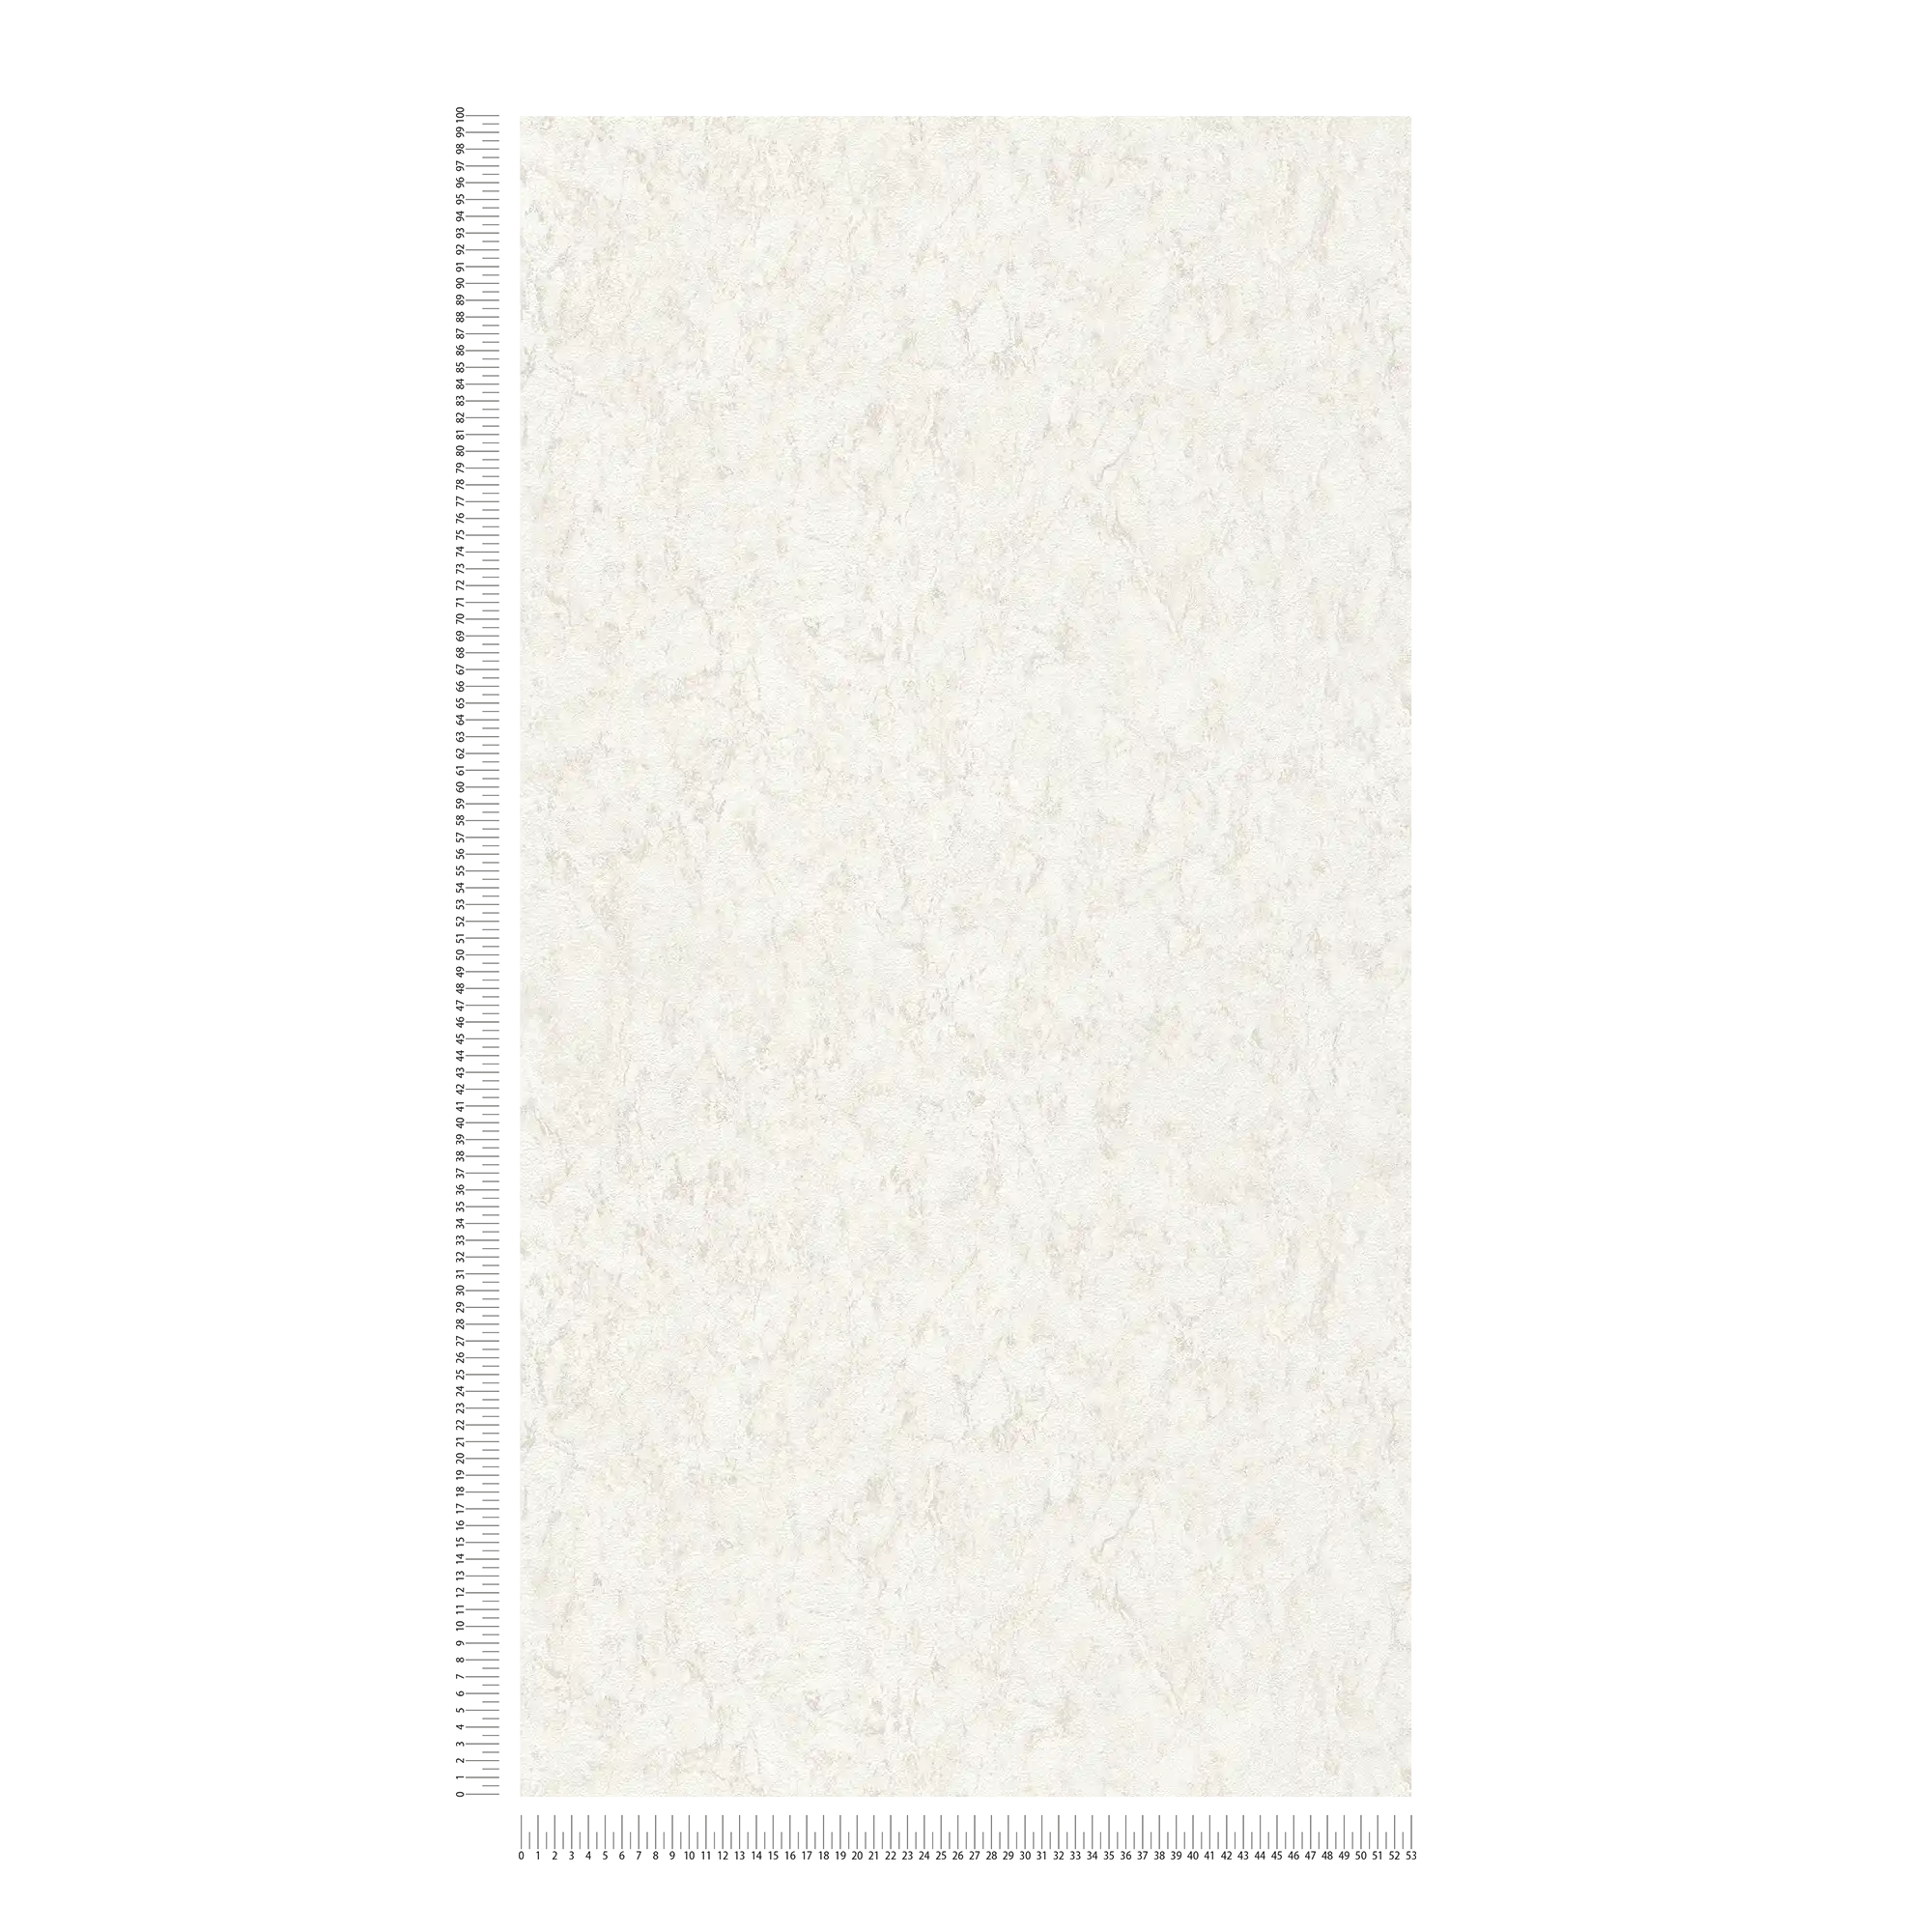             Carta da parati unitaria con effetto texture e disegno screziato - bianco, grigio
        